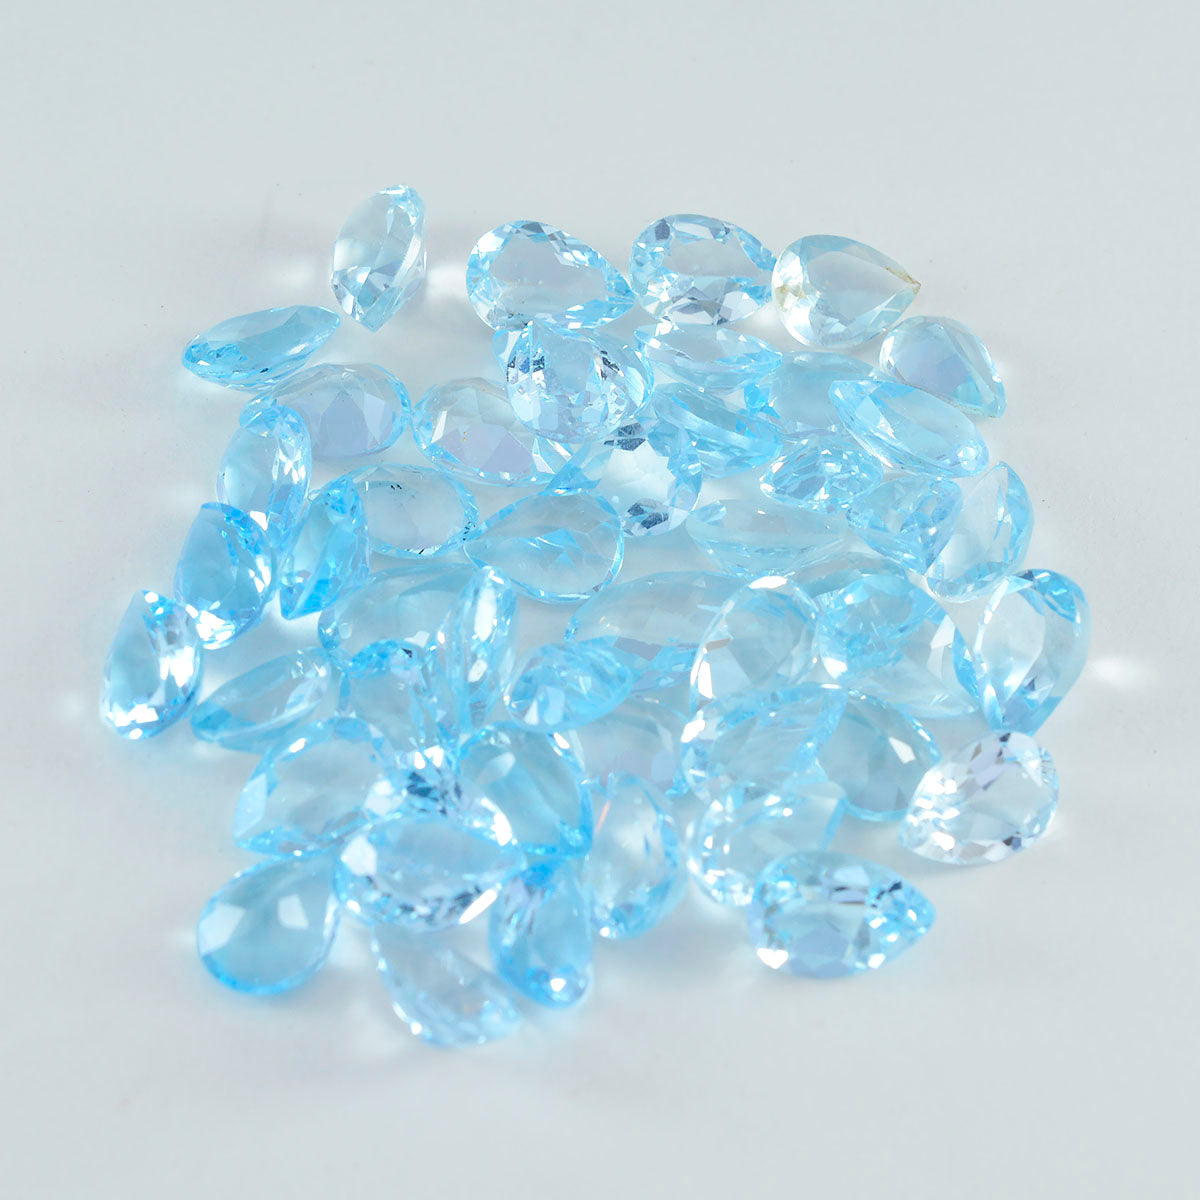 Riyogems 1 pieza de topacio azul auténtico facetado de 4x6 mm con forma de pera, piedra preciosa de calidad bonita